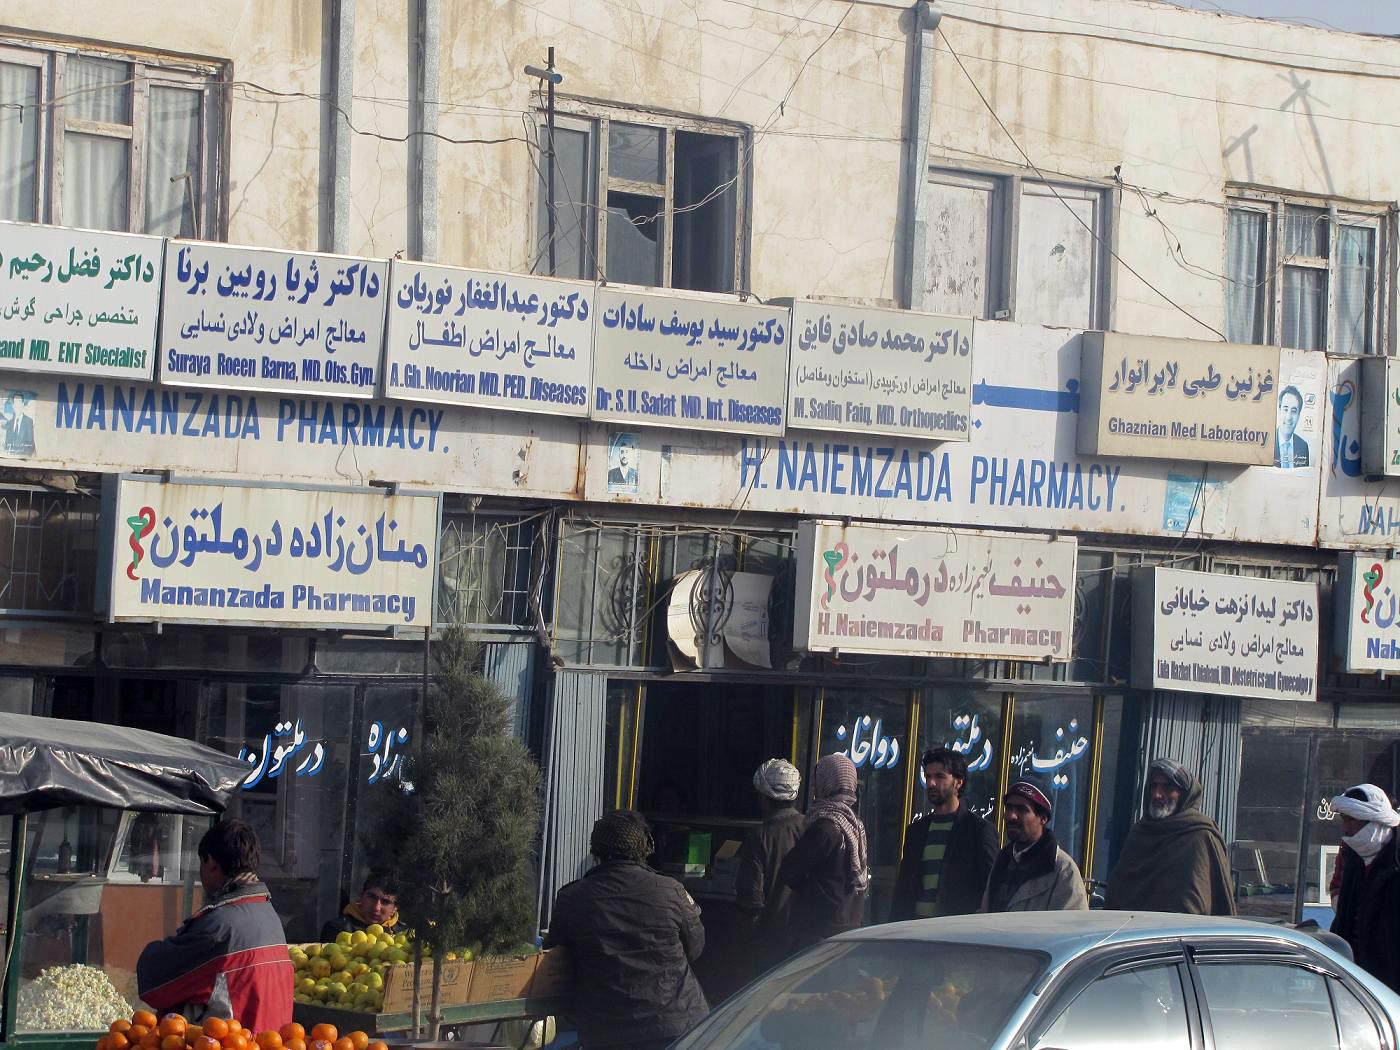 Private medical clinics closed in Mazar